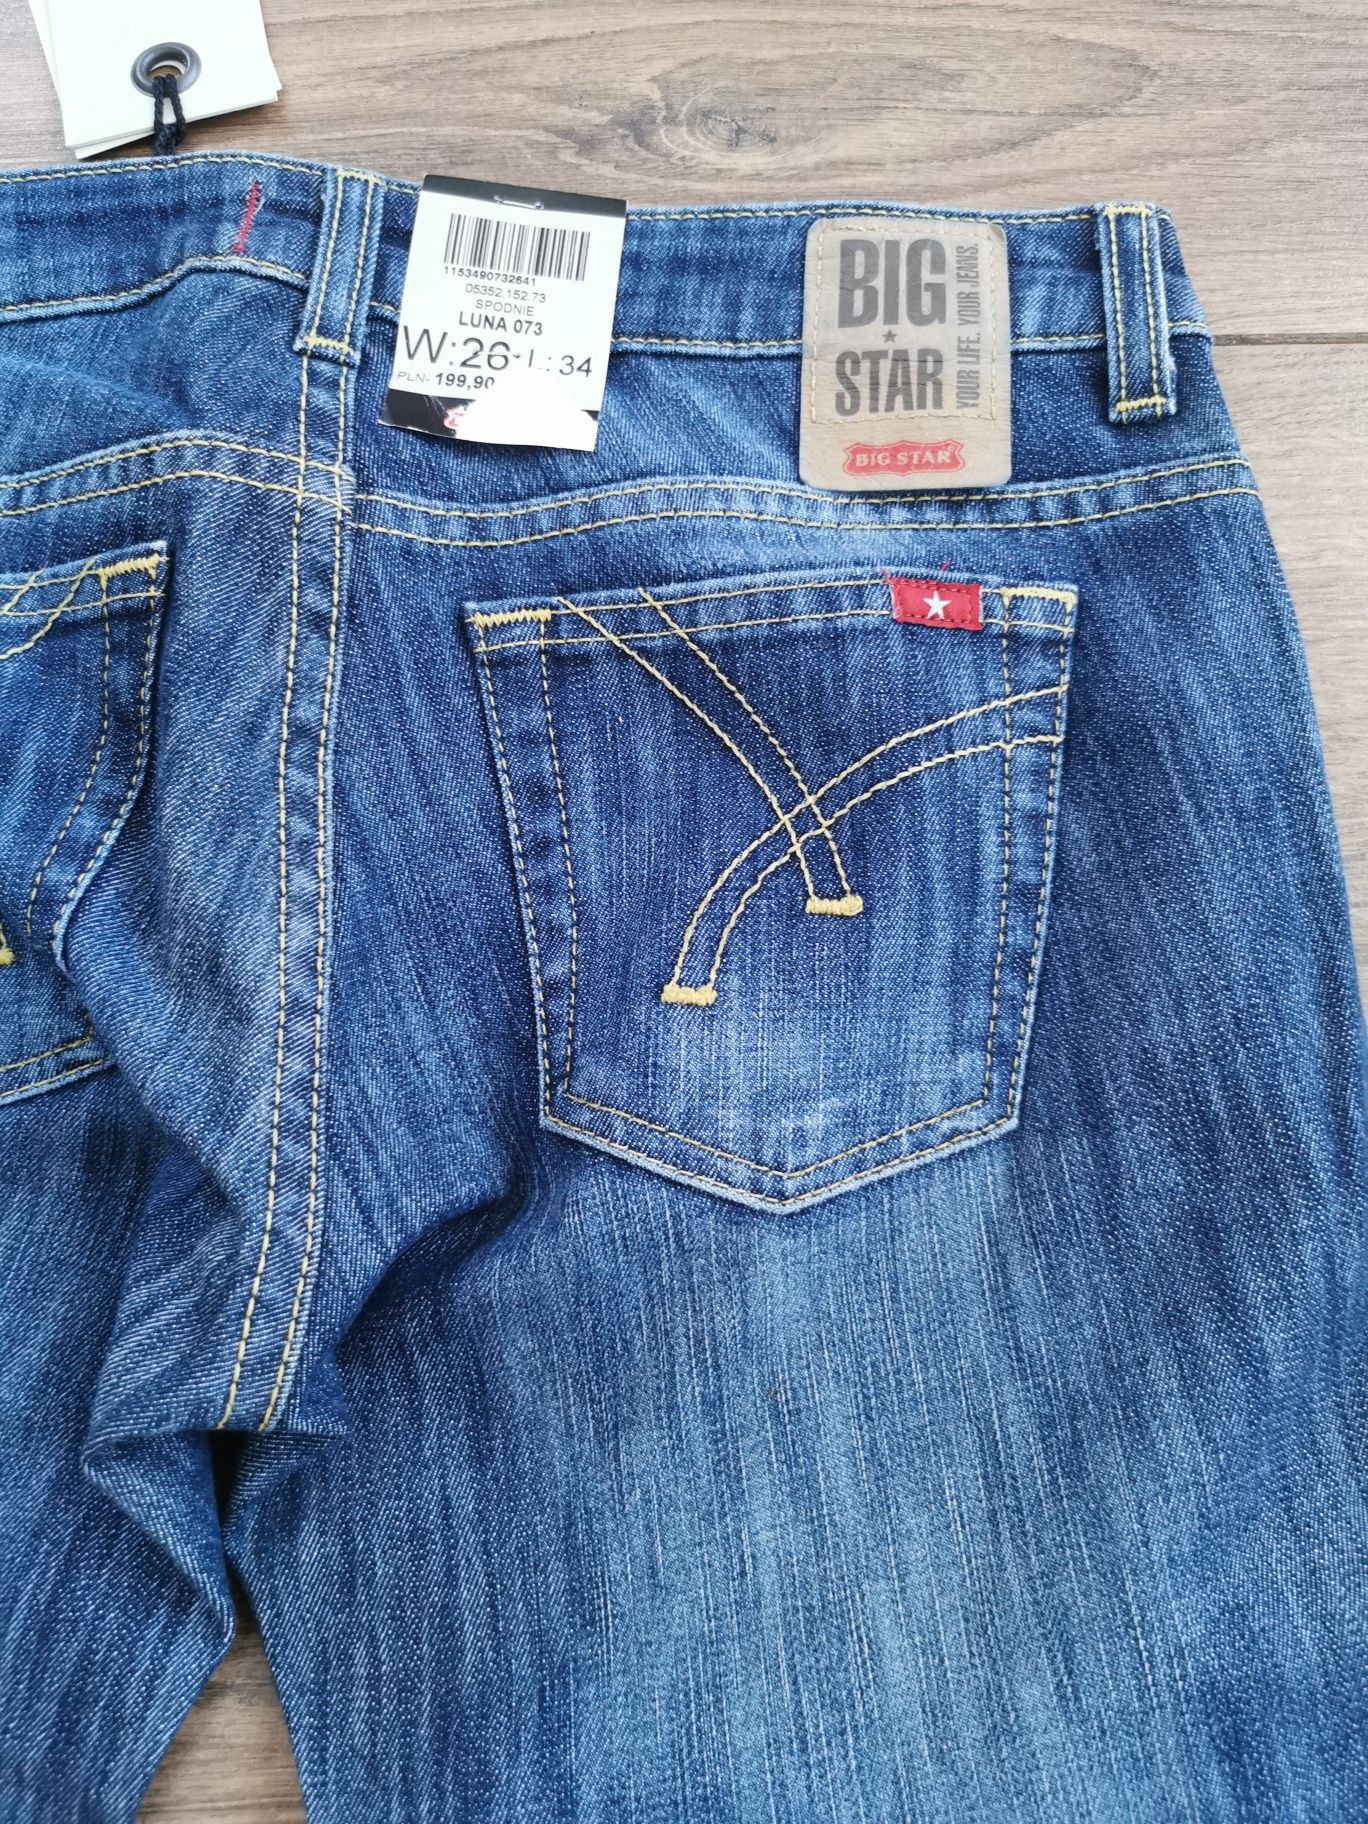 Spodnie jeansowe Big Star W26 L34 damskie nowe